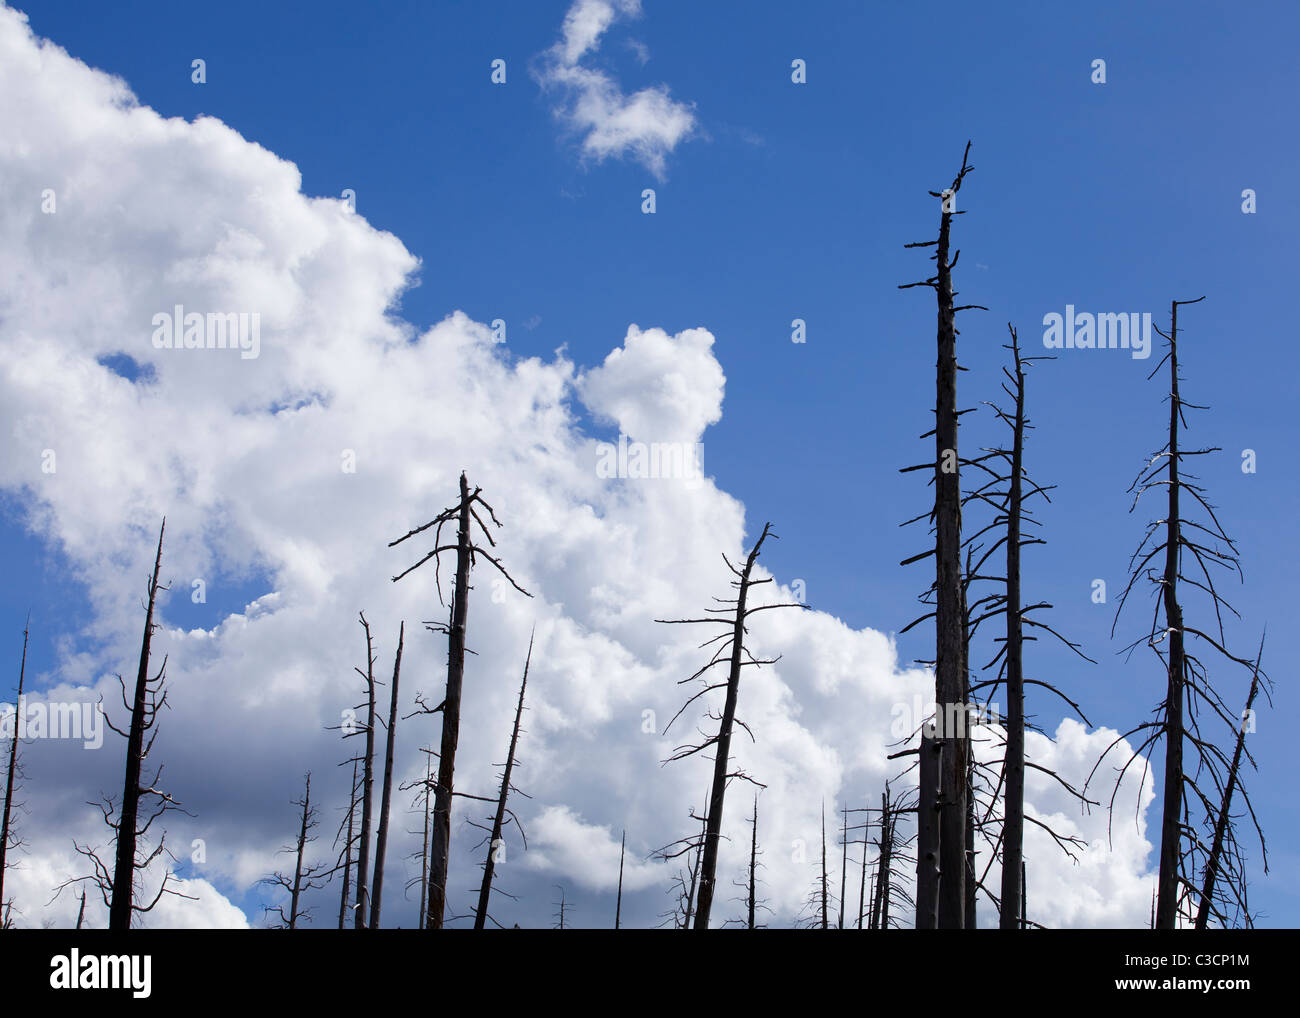 Árboles quemados en incendios forestales, contra el azul cielo nublado - Sierra Nevada, California, EE.UU. Foto de stock